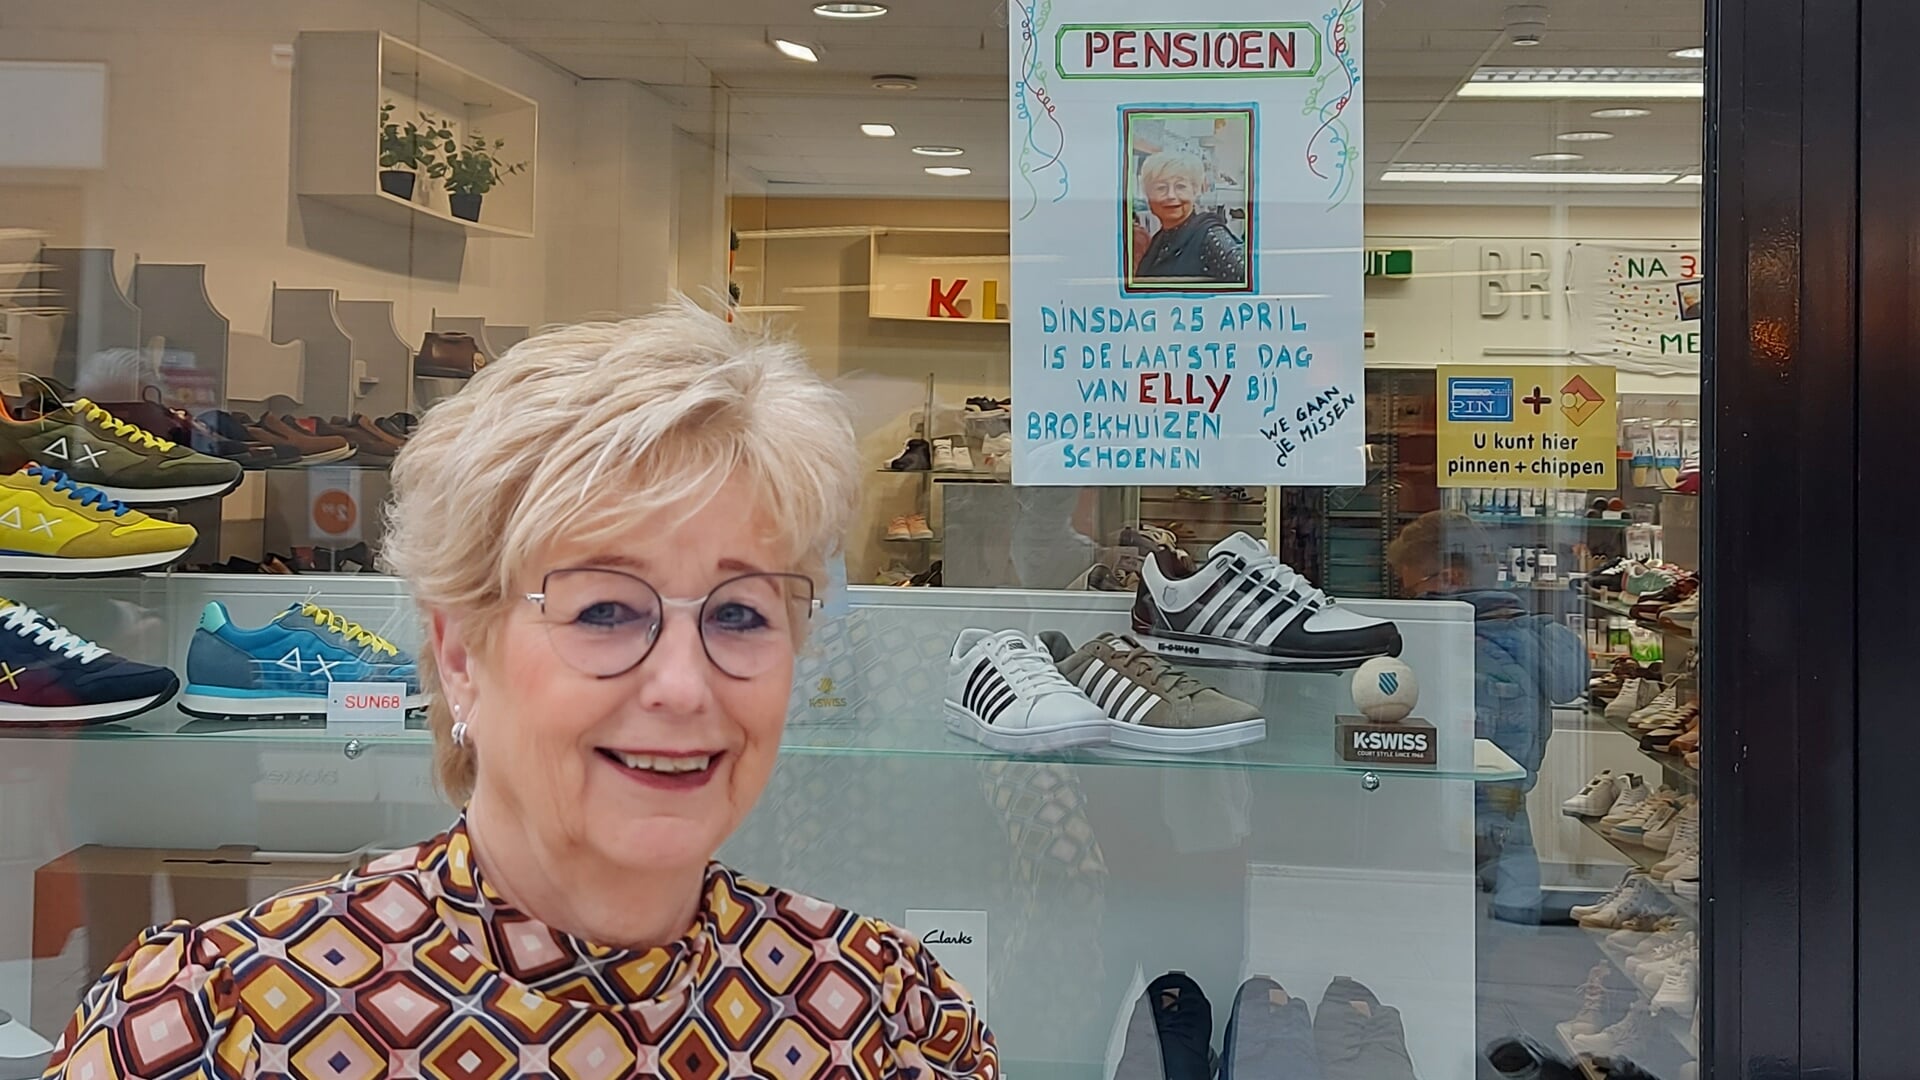 Glimlach ongezond houder Elly stopt na 31 jaar met werken bij Broekhuizen Schoenen - HCnieuws |  Nieuws uit de regio Hoofddorp